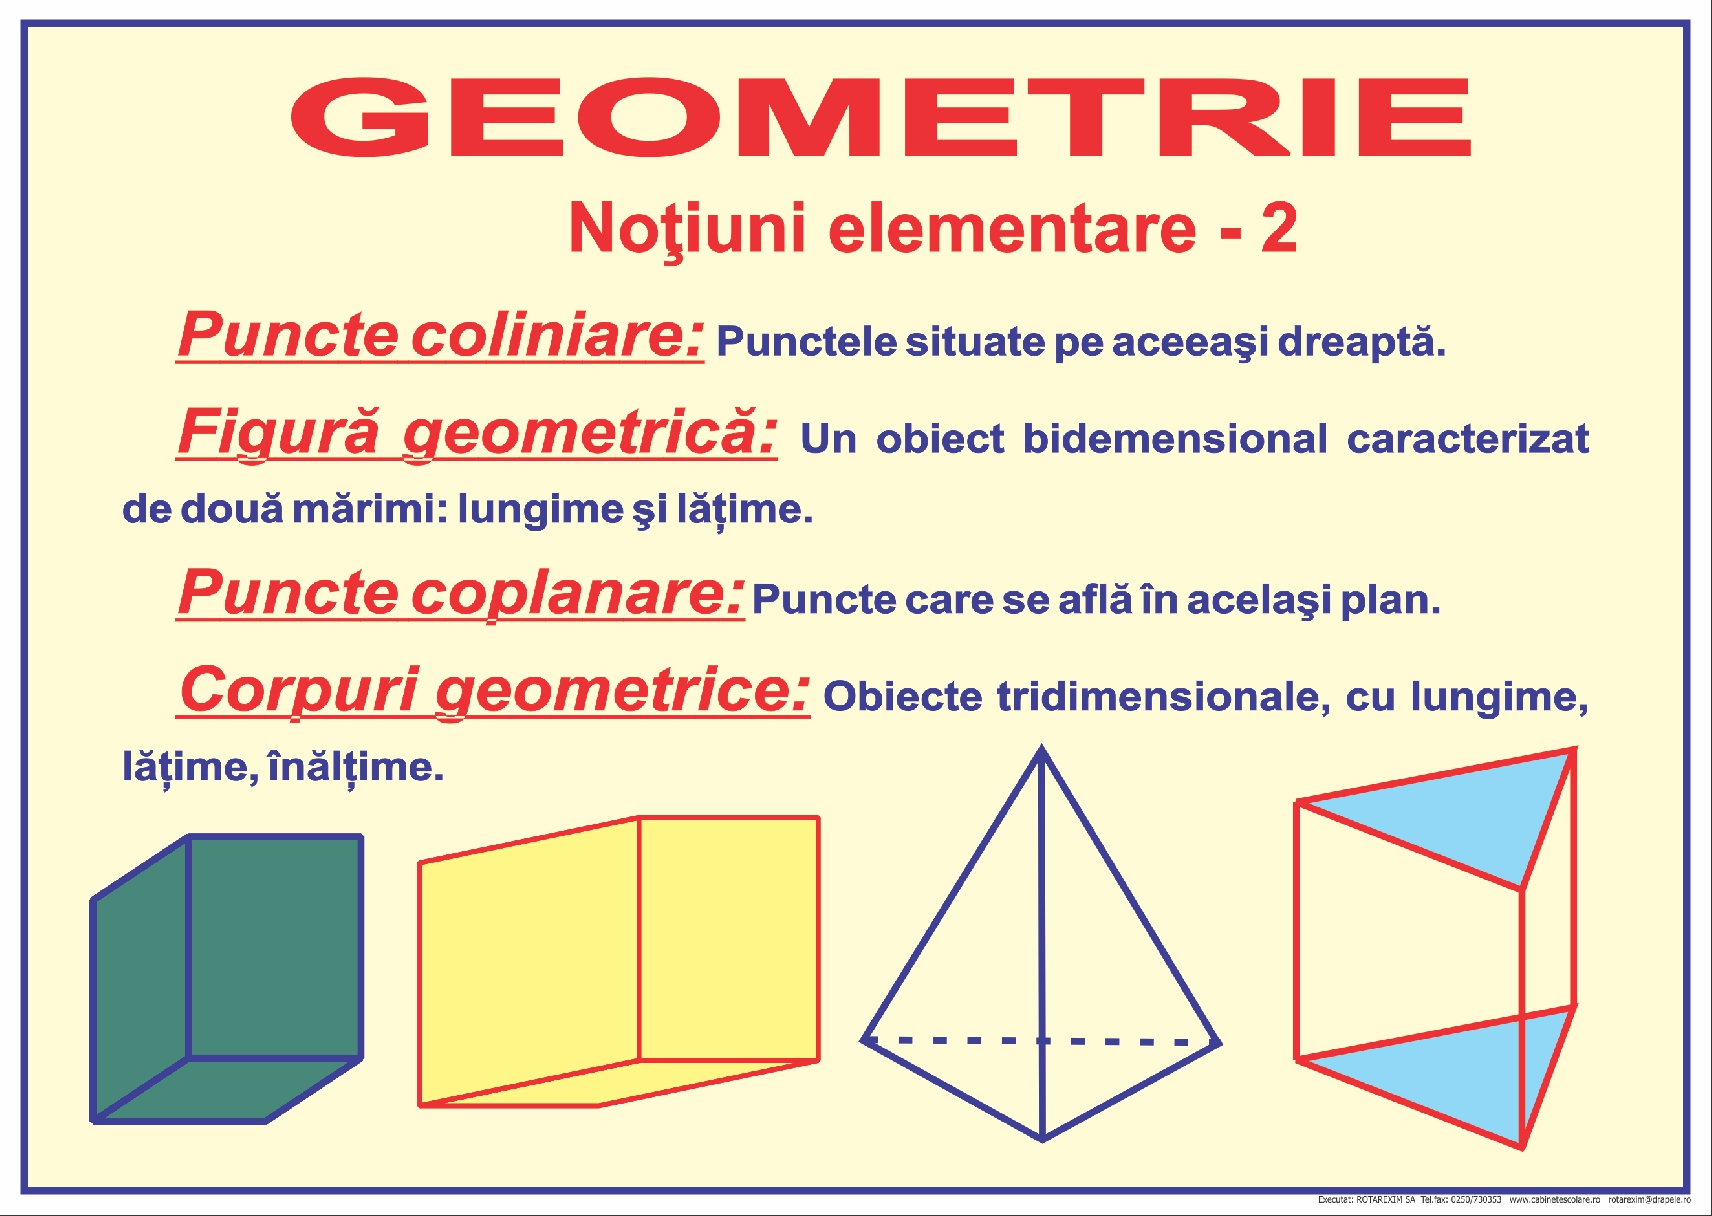 Noțiuni elementare de geometrie - 2